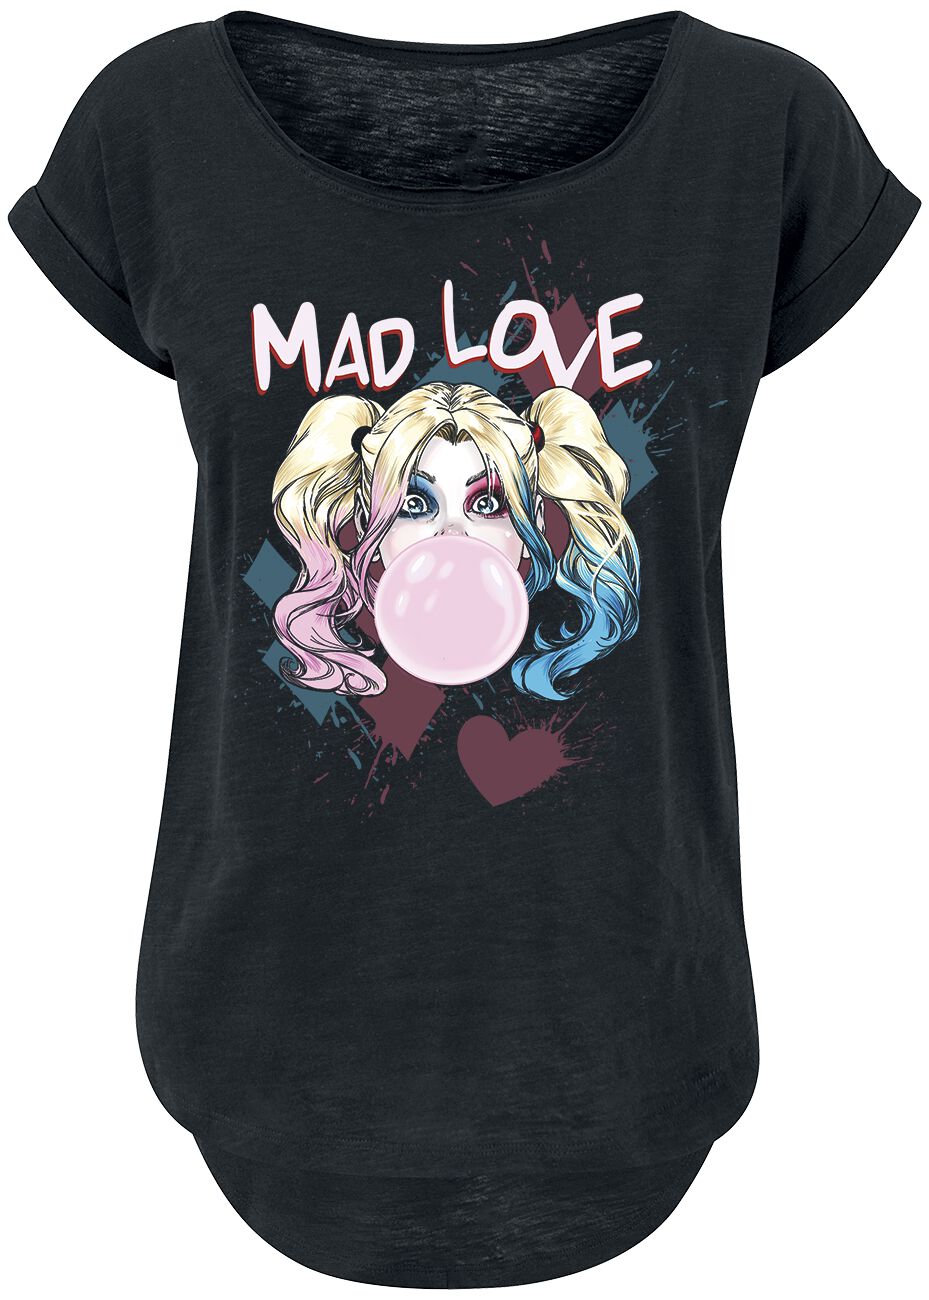 Harley Quinn - DC Comics T-Shirt - Mad Love - XS bis 3XL - für Damen - Größe XL - schwarz  - EMP exklusives Merchandise!